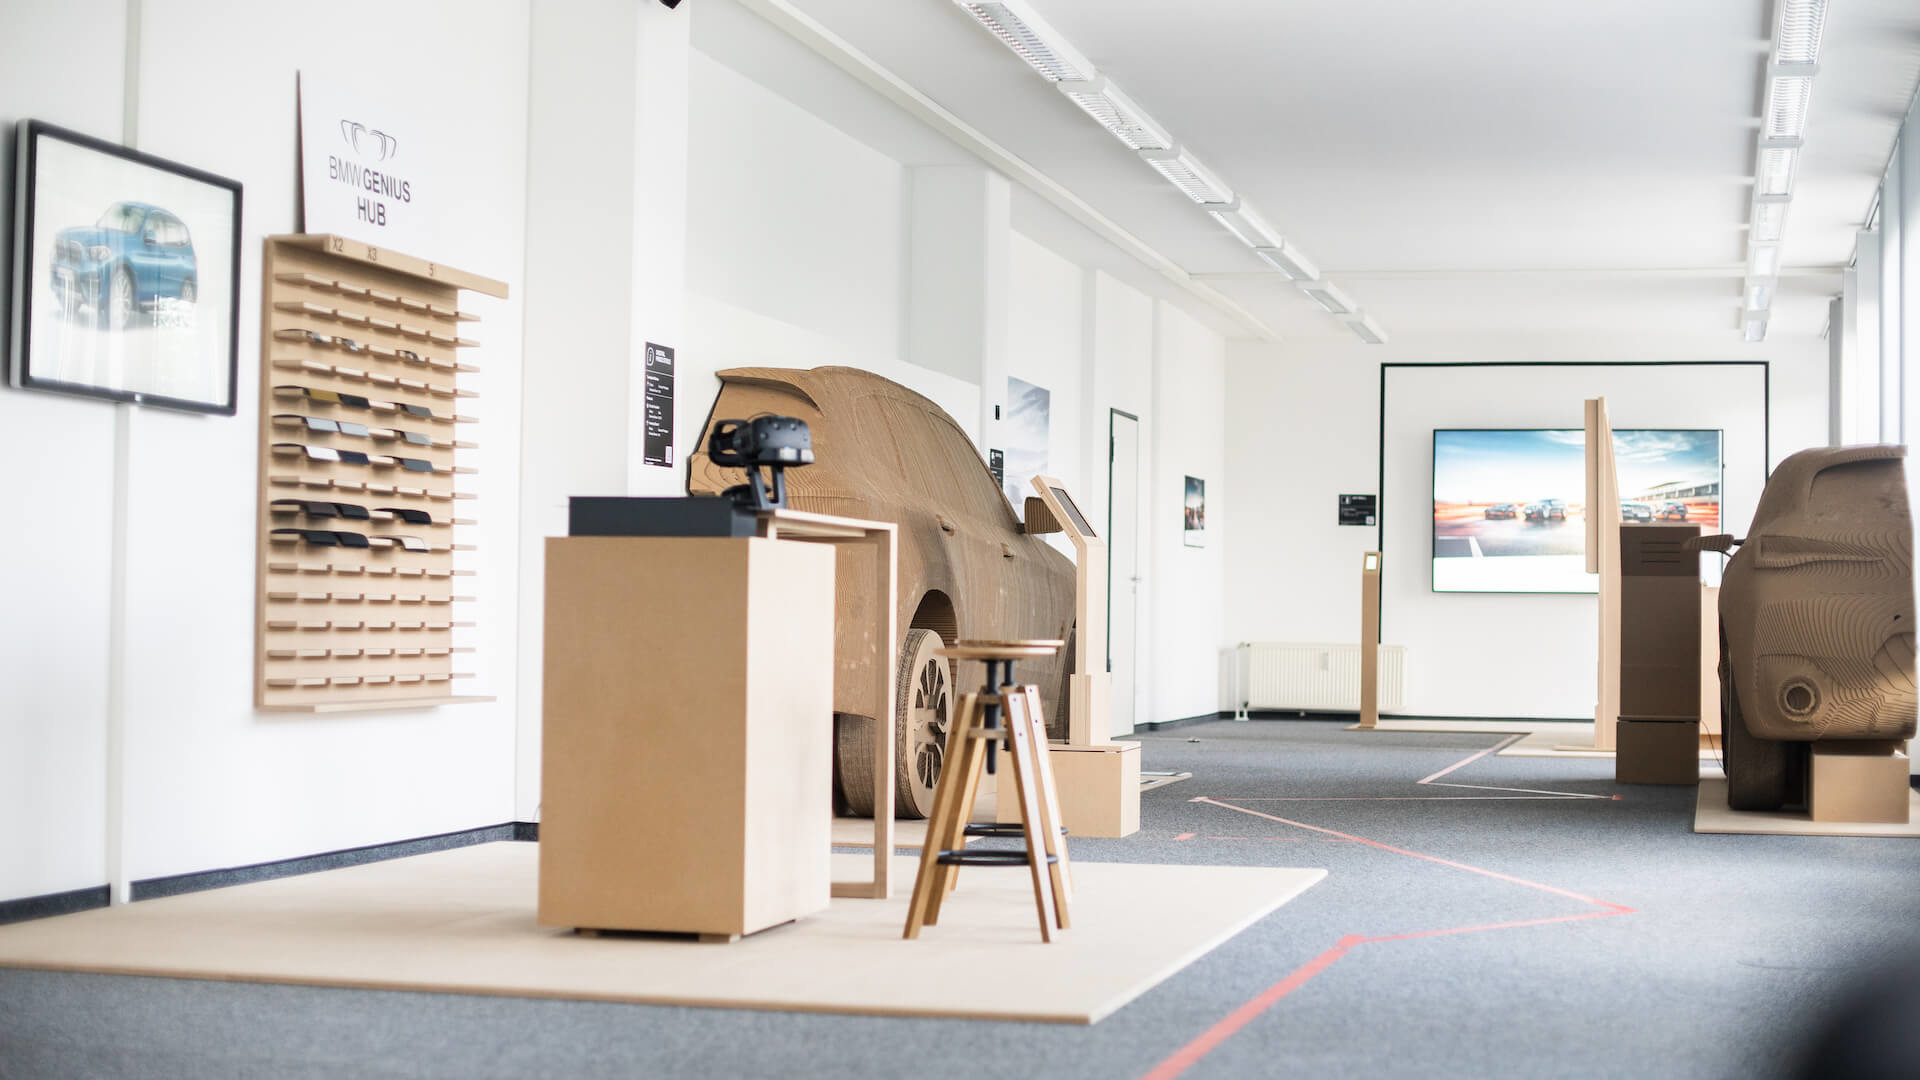 Für die BMW Group haben wir einen In-Space-Prototypen erstellt, der eine nahtlose Customer Experience entlang acht miteinander verbundener digitaler Touchpoints simuliert.